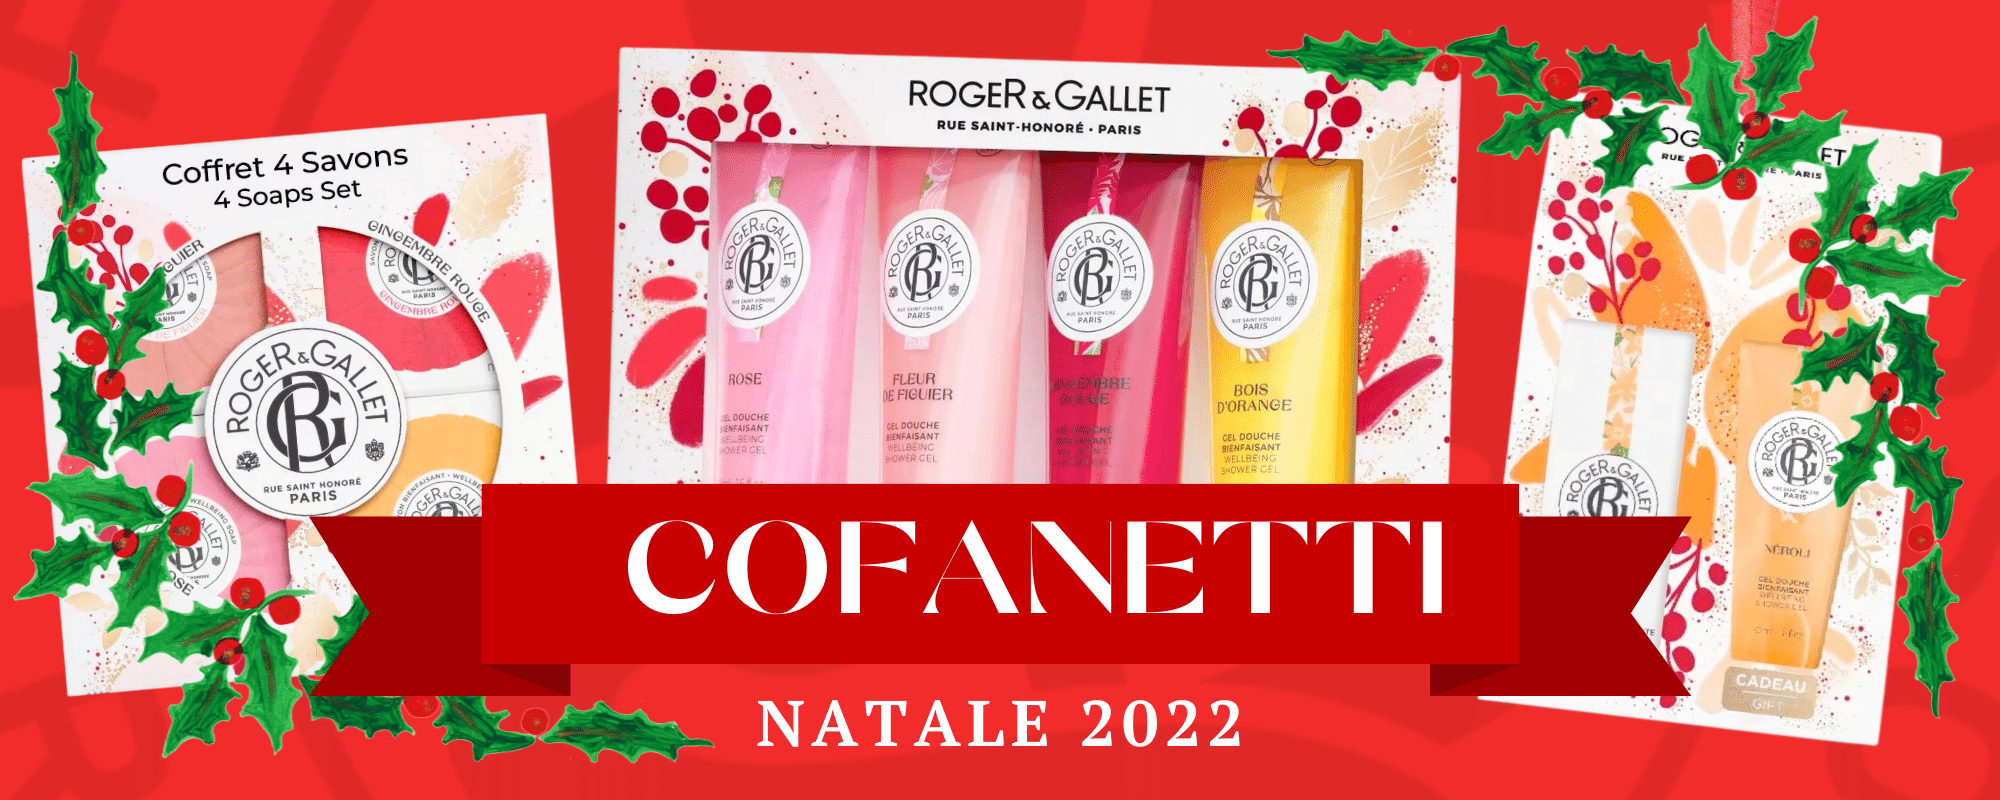 Cofanetti Natale 2022 Roger Gallet